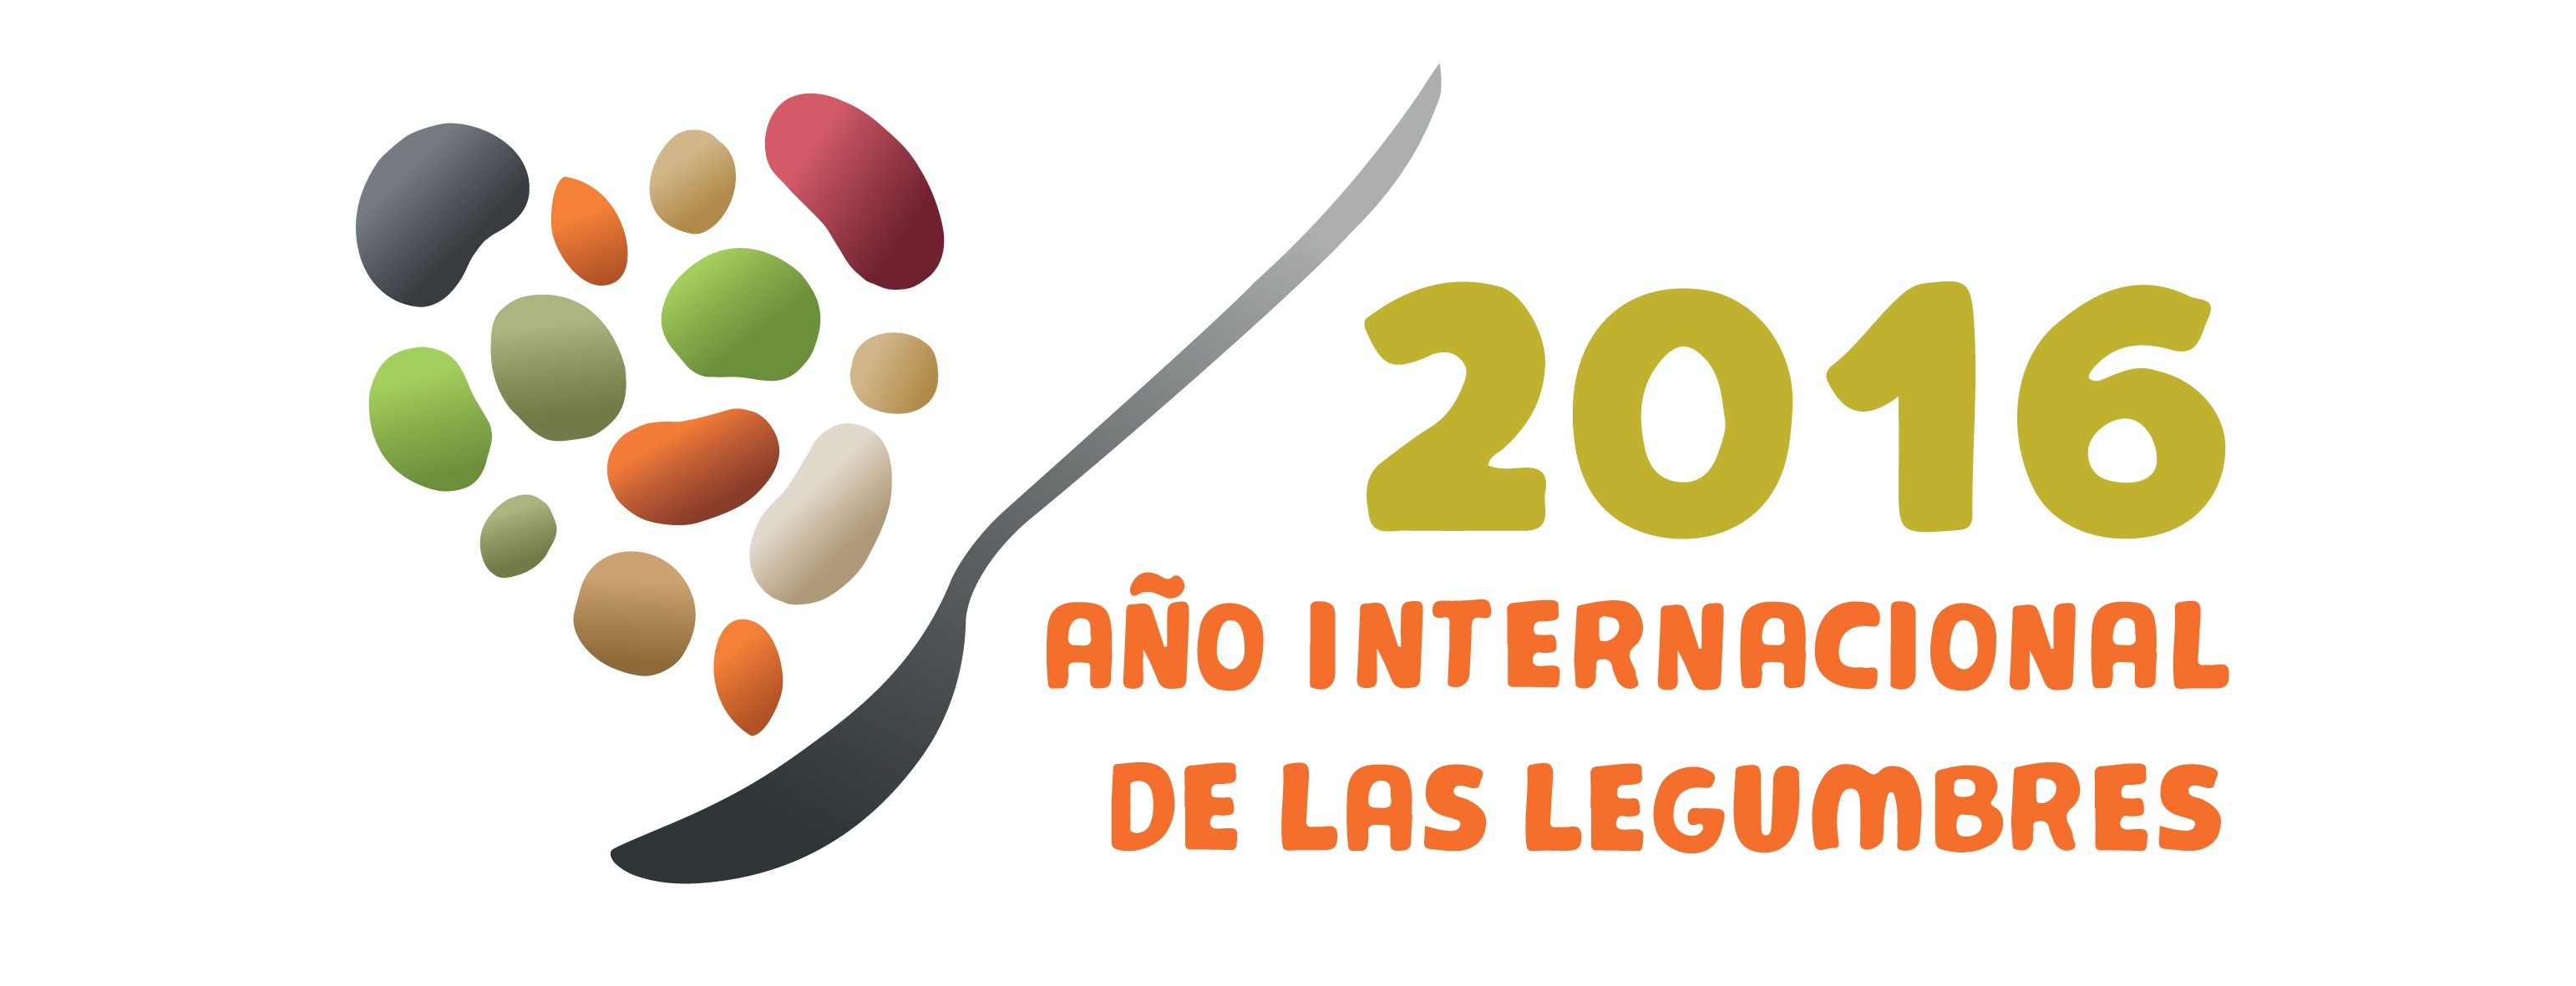 2016_AÑO INTERNACIONAL DE LAS LEGUMBRES